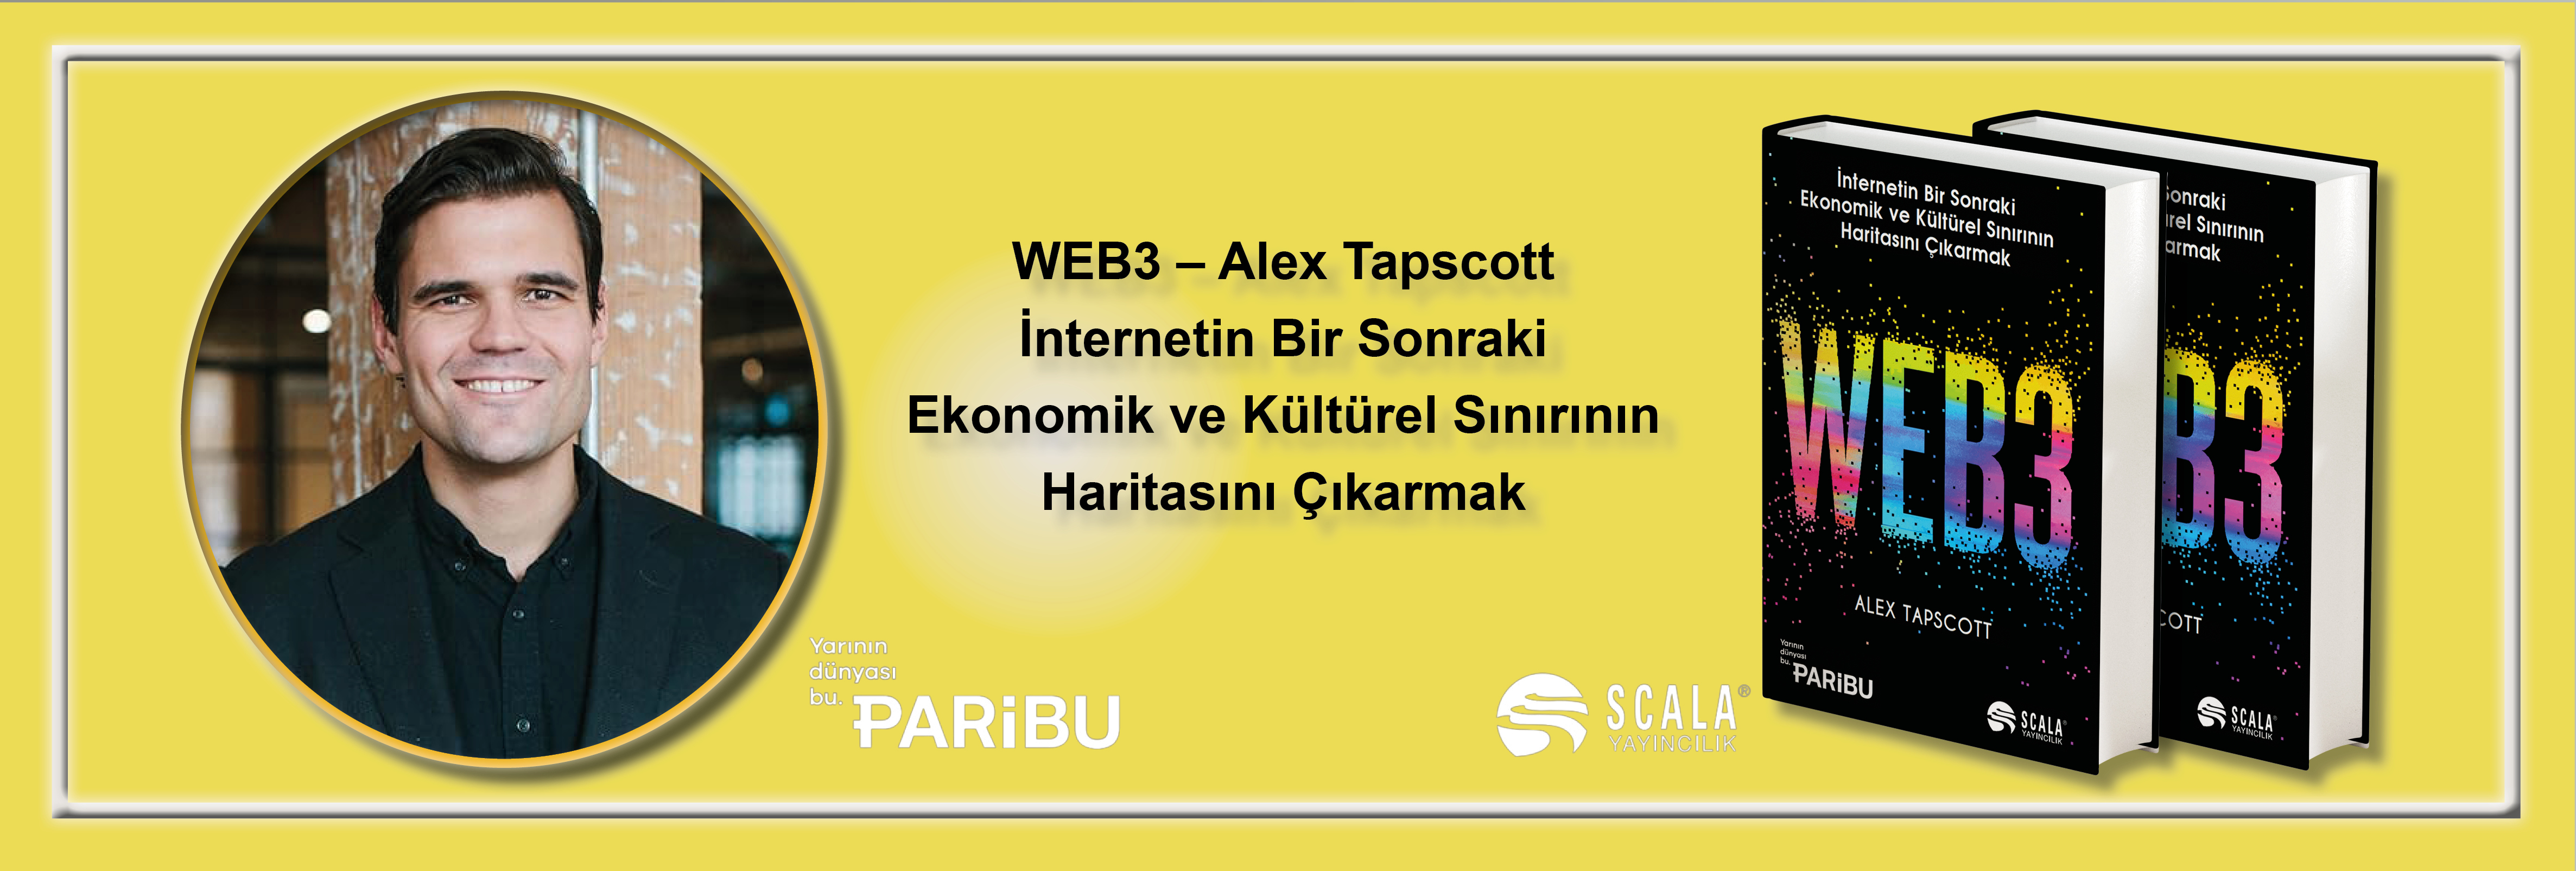 web3-alex-tapscott-paribu